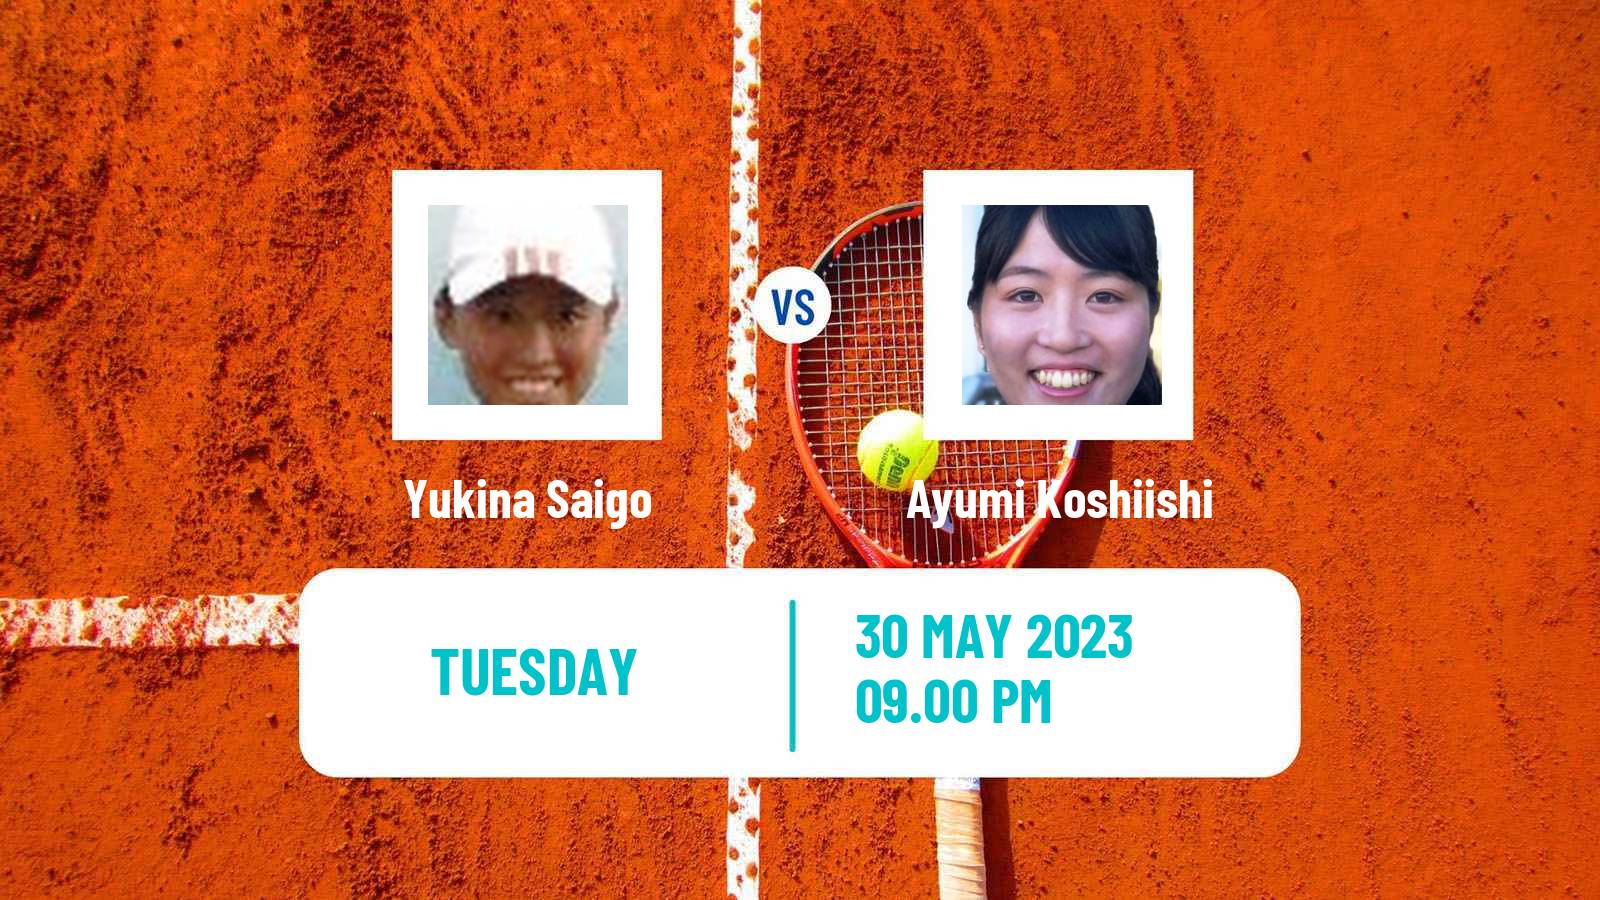 Tennis ITF W25 Tokyo Women Yukina Saigo - Ayumi Koshiishi